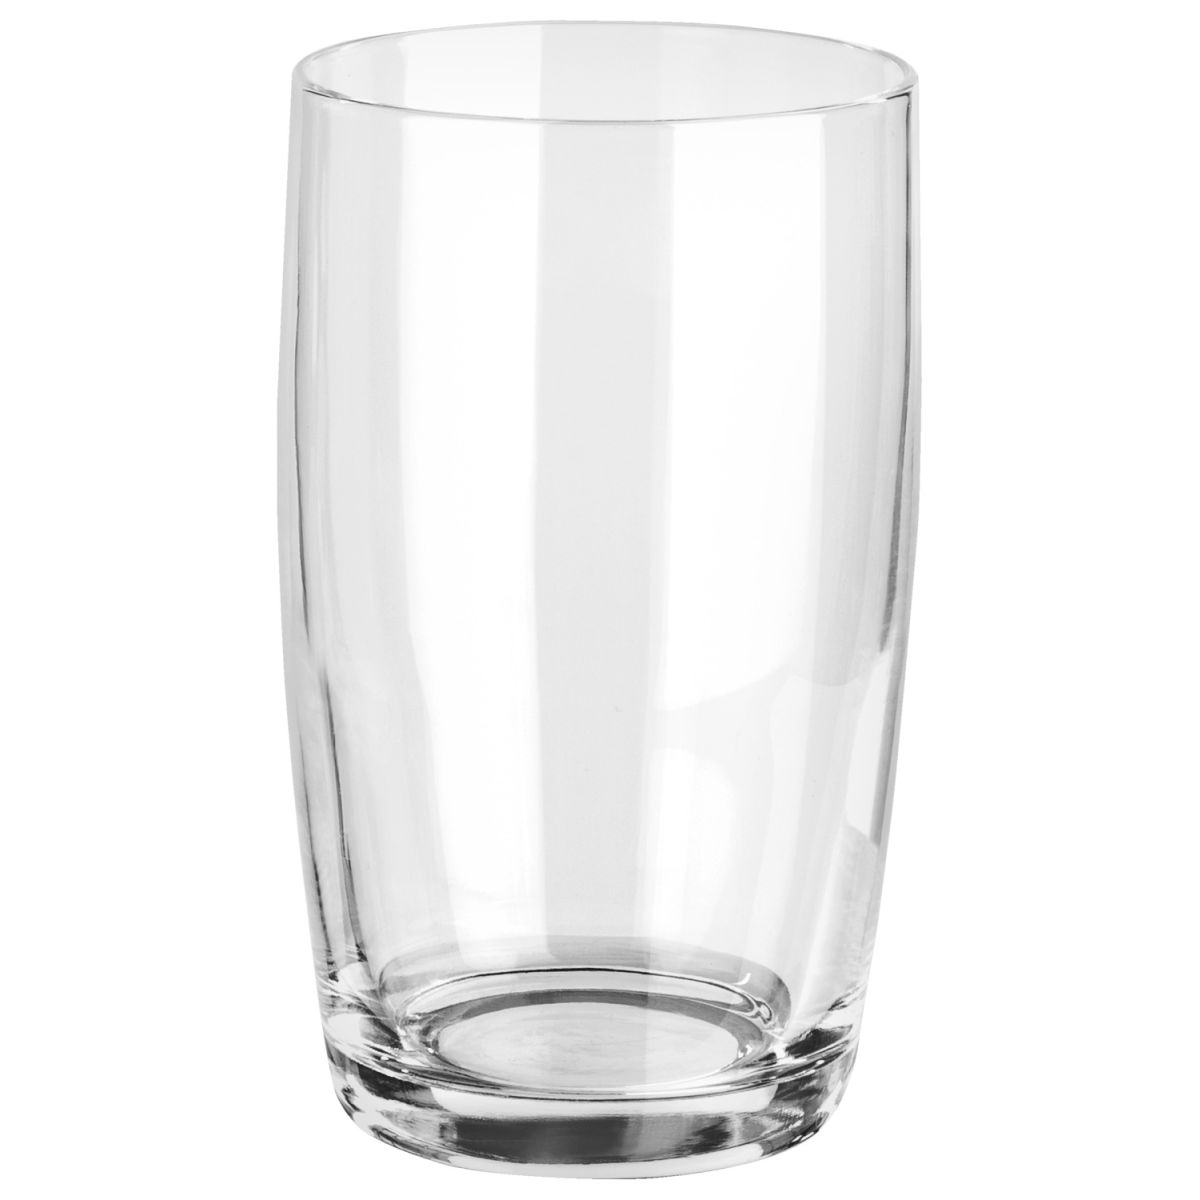 Vega Glas Iva; 205ml, 5.9x10.2 cm (ØxH); transparant; 4 stuk / verpakking